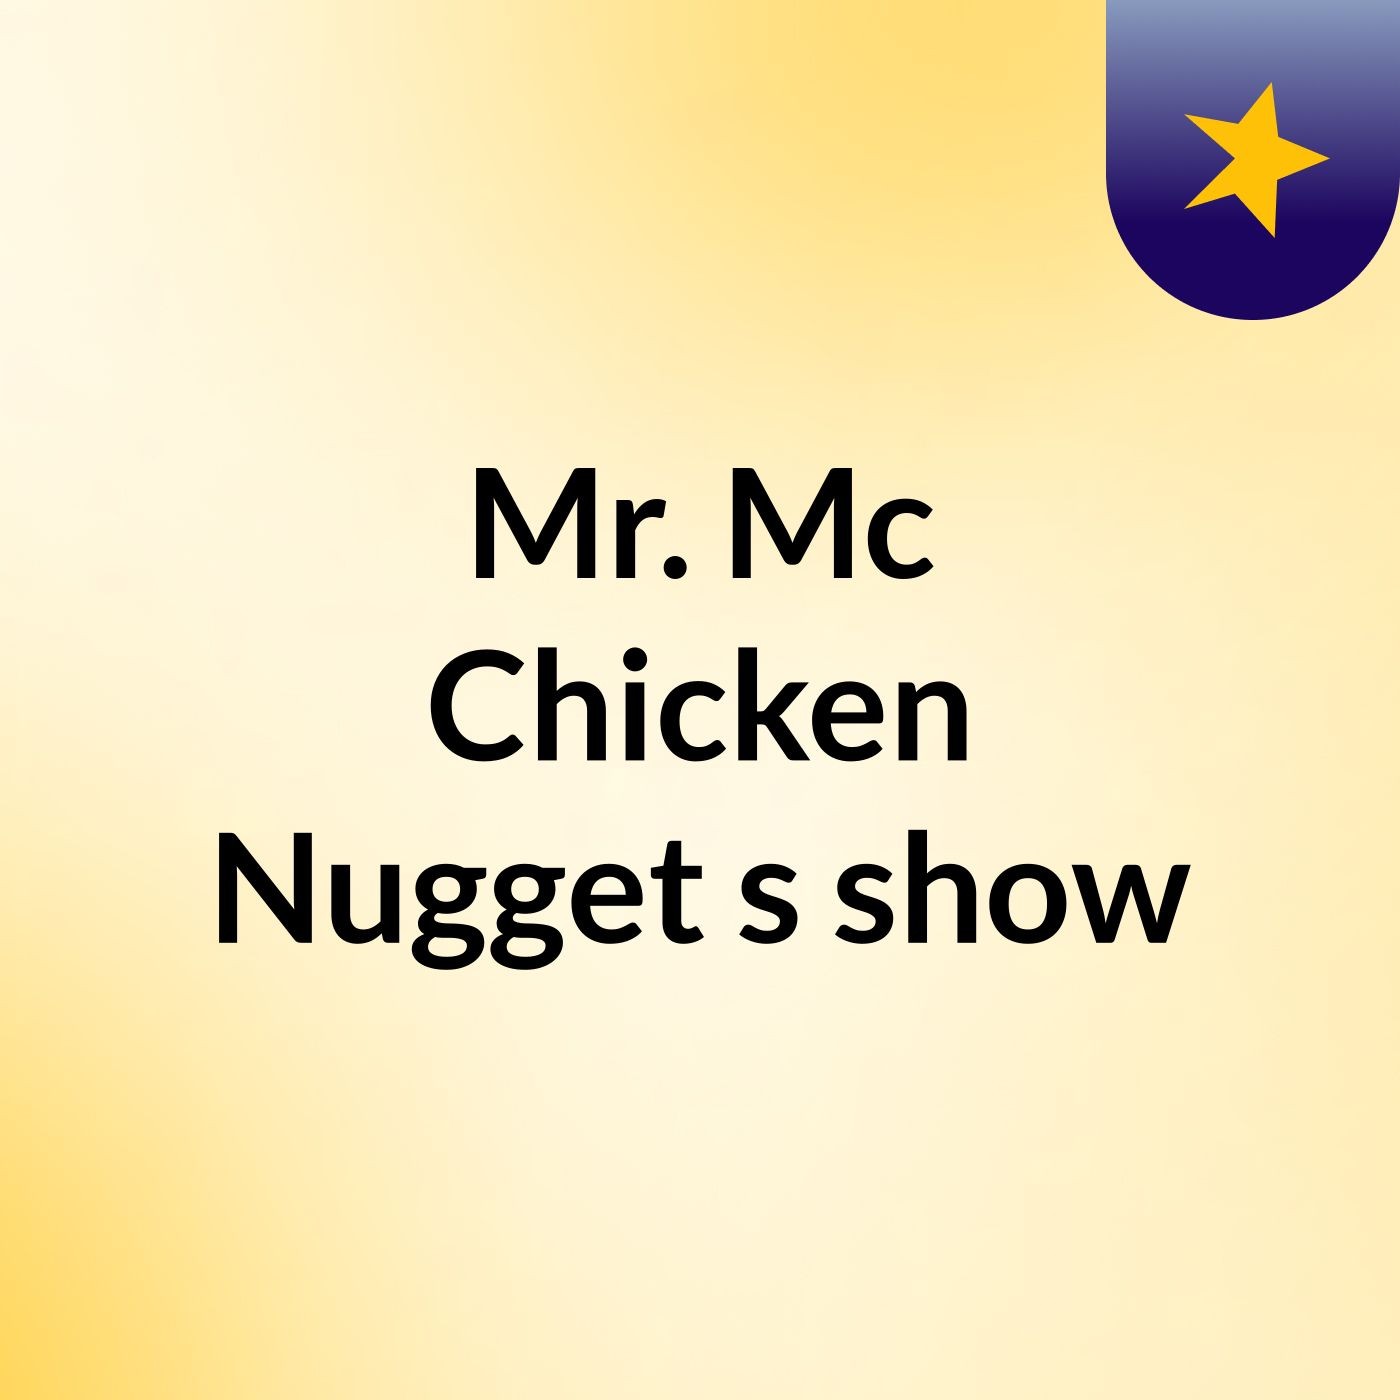 Mr. Mc Chicken Nugget's show